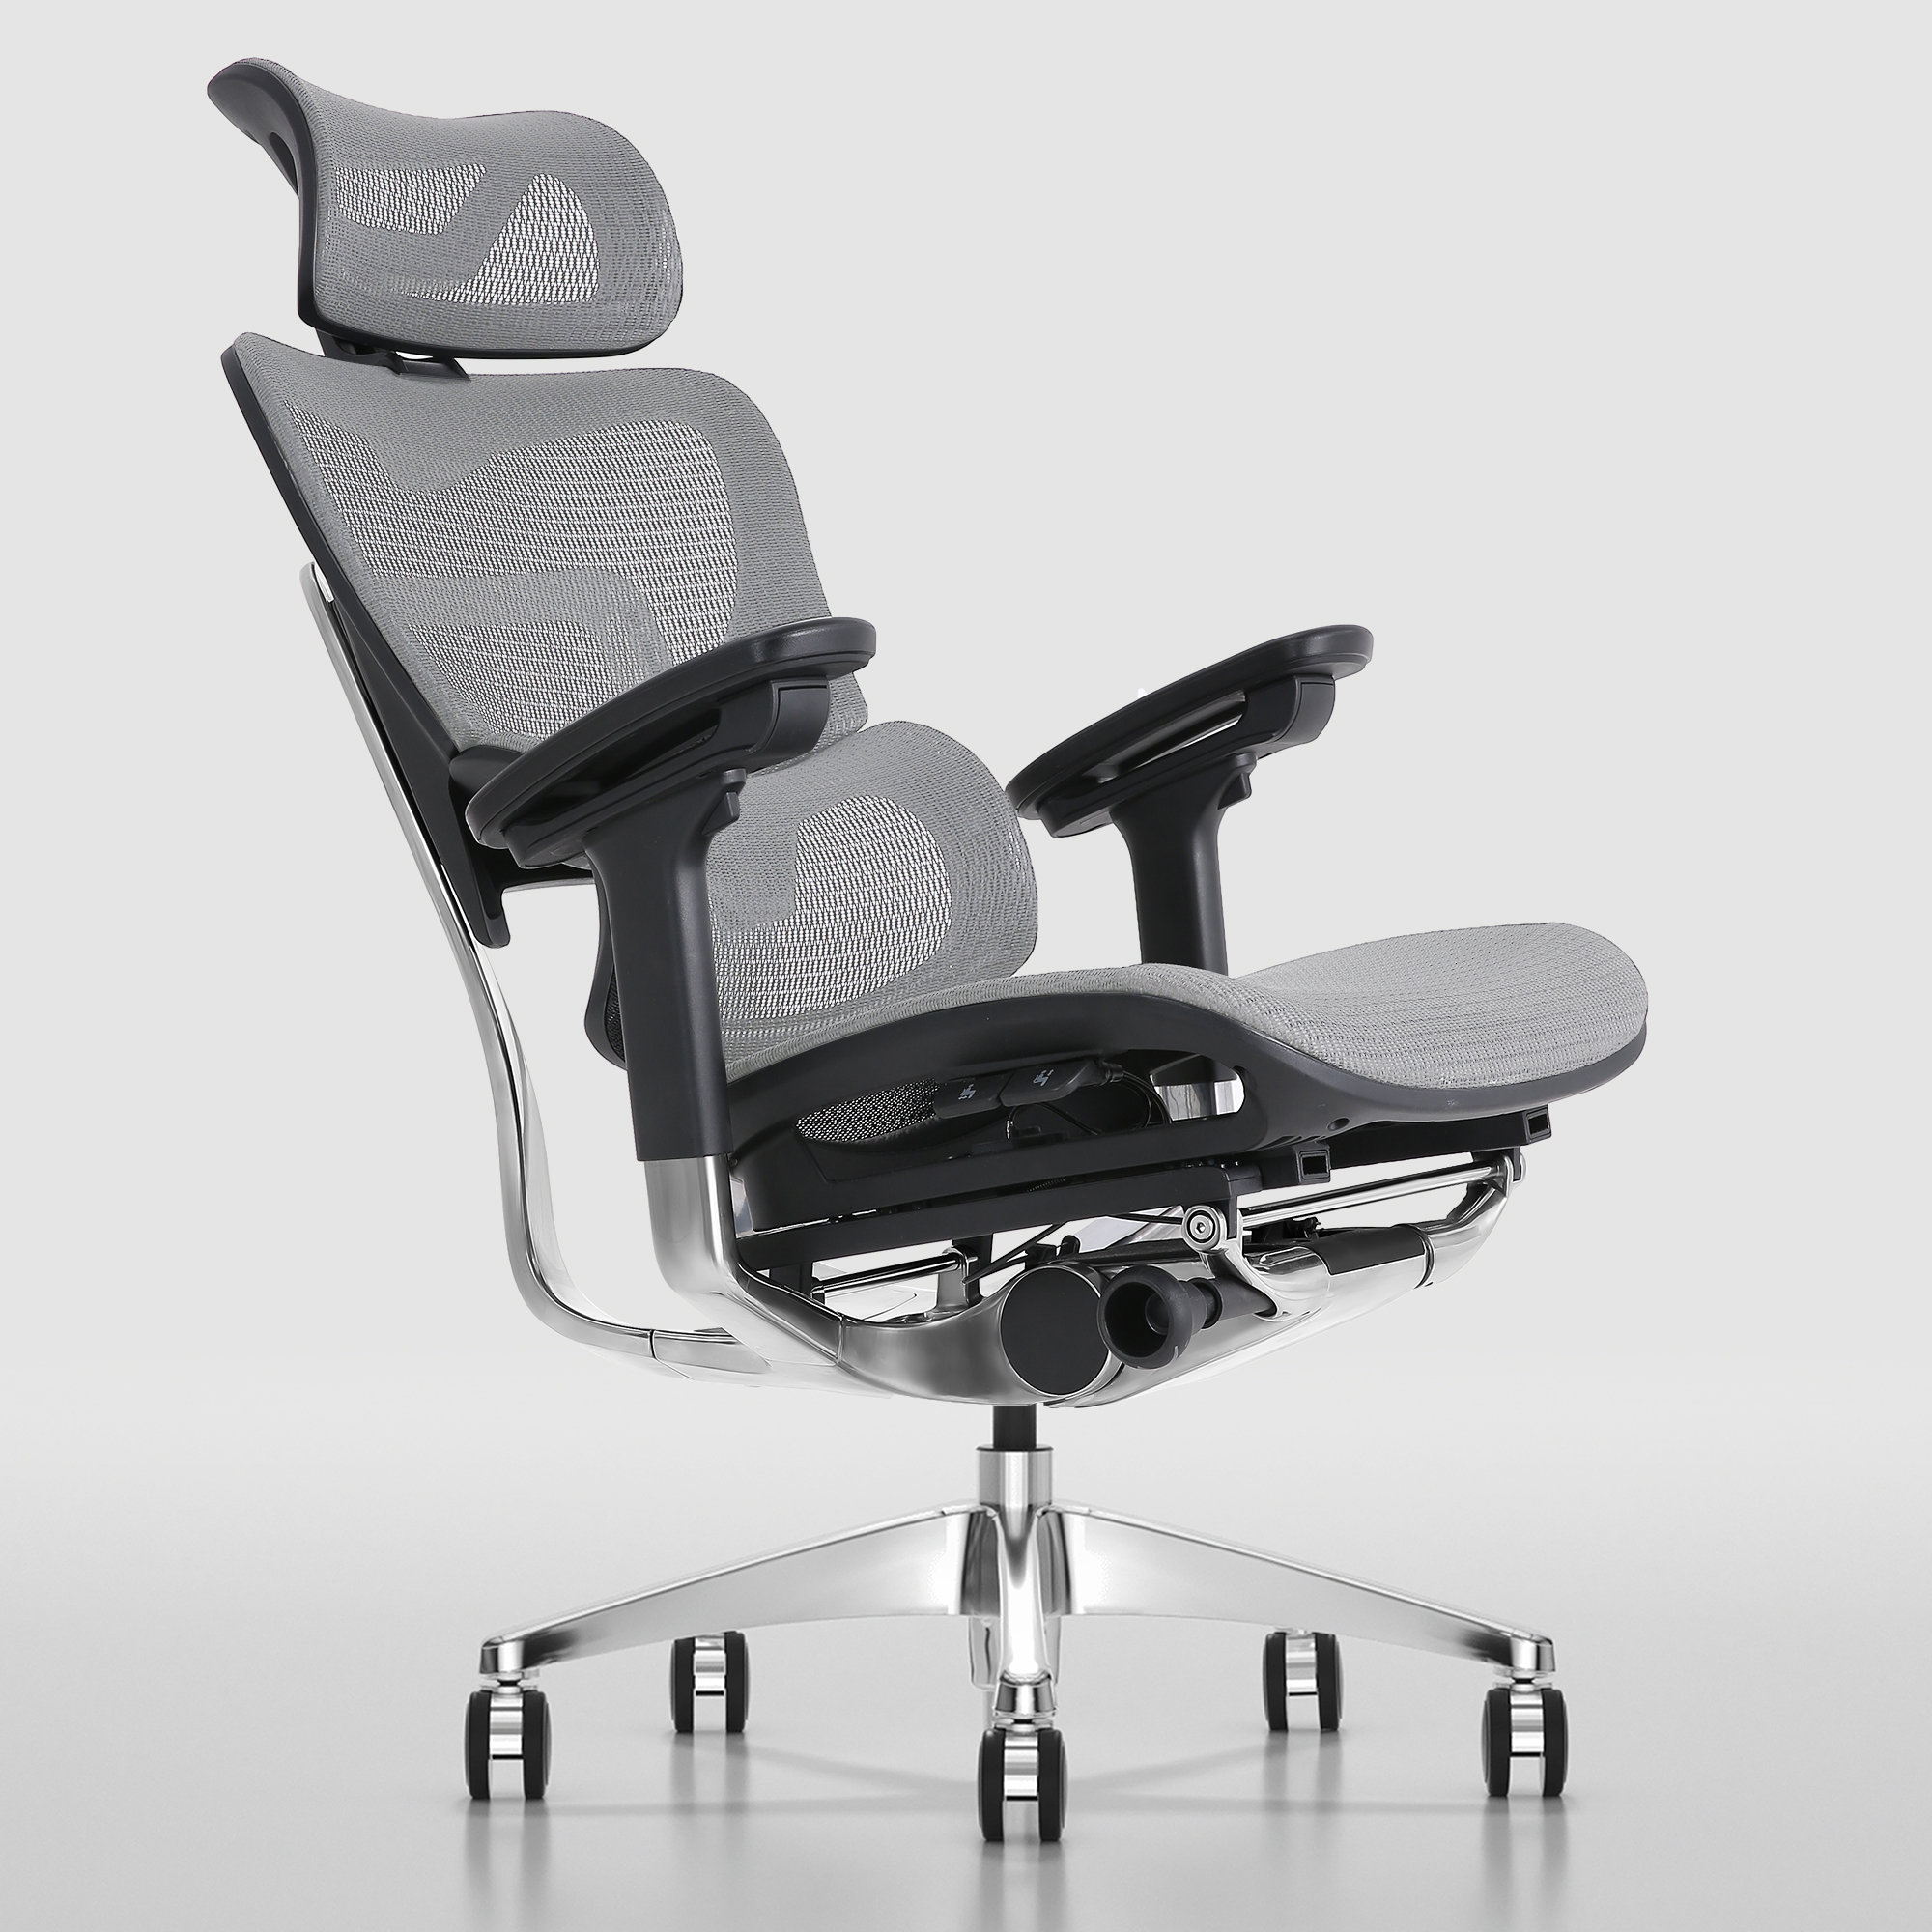 https://assets.wfcdn.com/im/31034914/compr-r85/2366/236651609/ergonomic-office-chair-with-headrest-high-back-business-mesh-task-chair.jpg